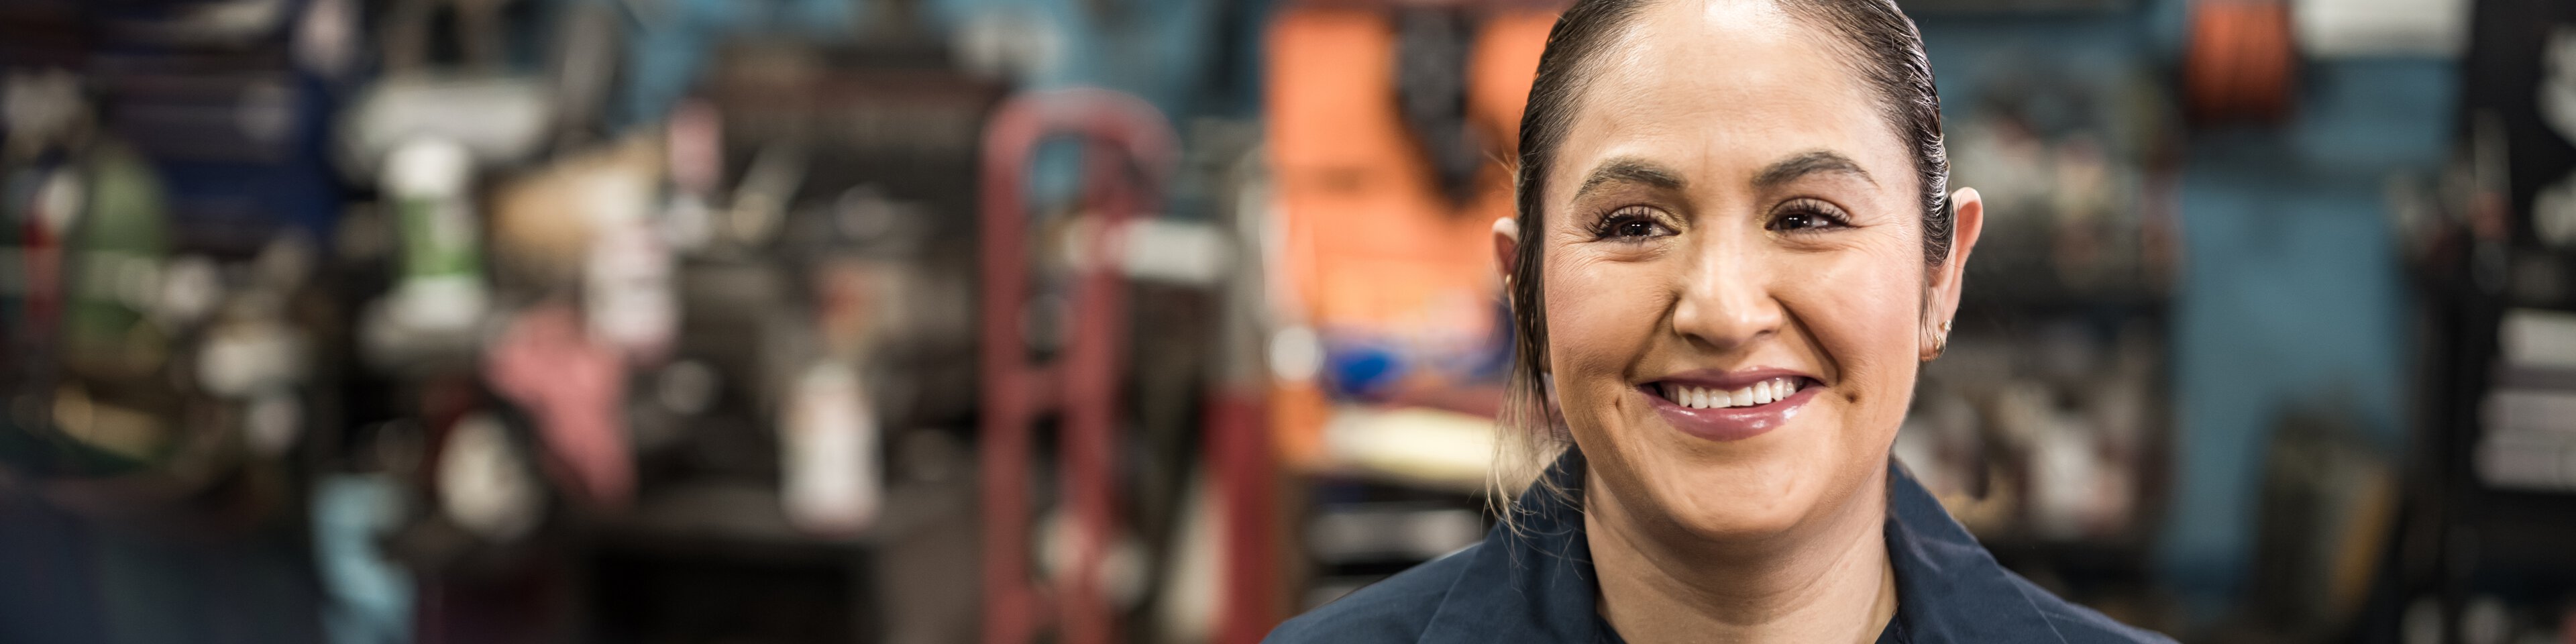 Frau in dunkelblauem Hemd steht lächelnd in einer Werkstatt  | © FOTOGRAFIA INC.